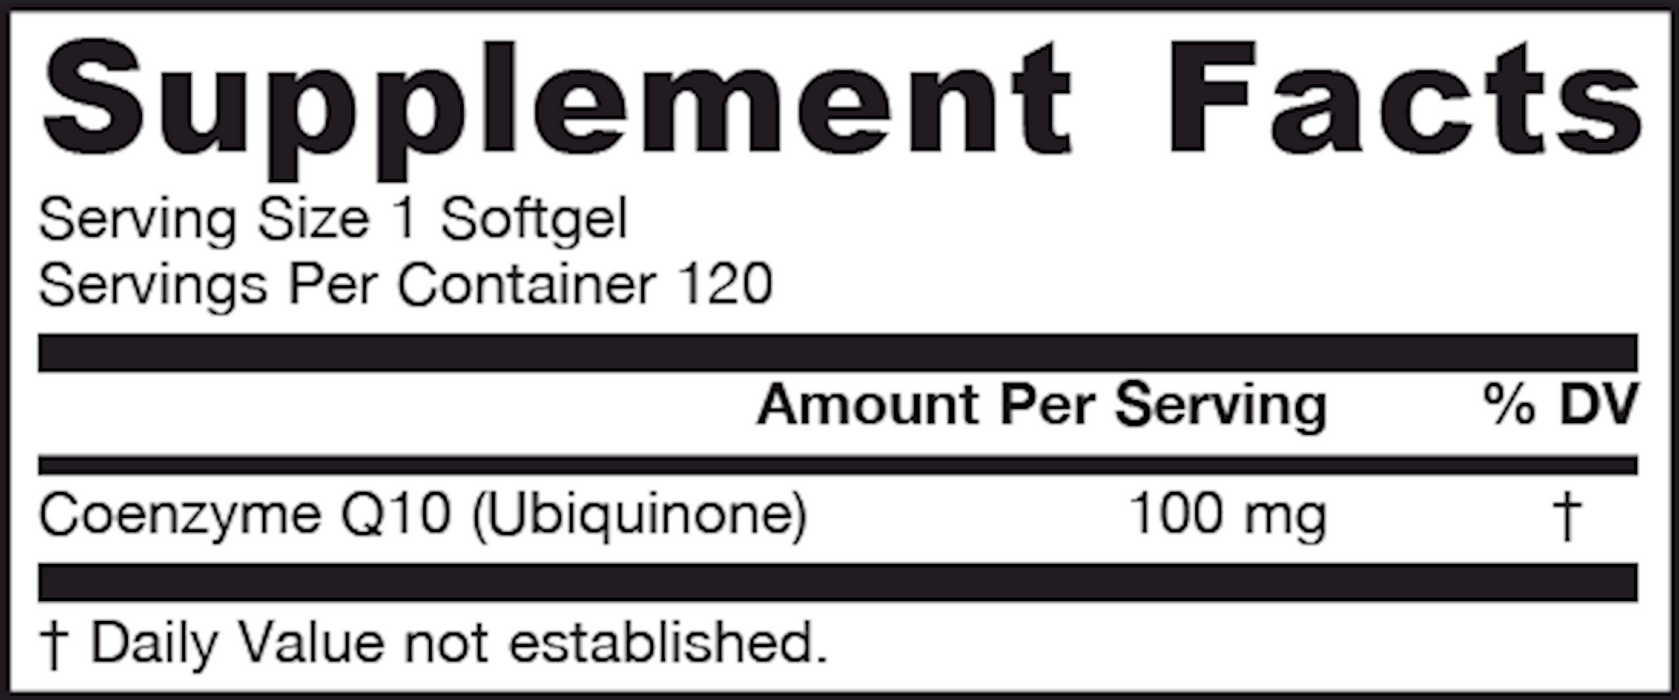 Q-Absorb Co-Q10 100 mg